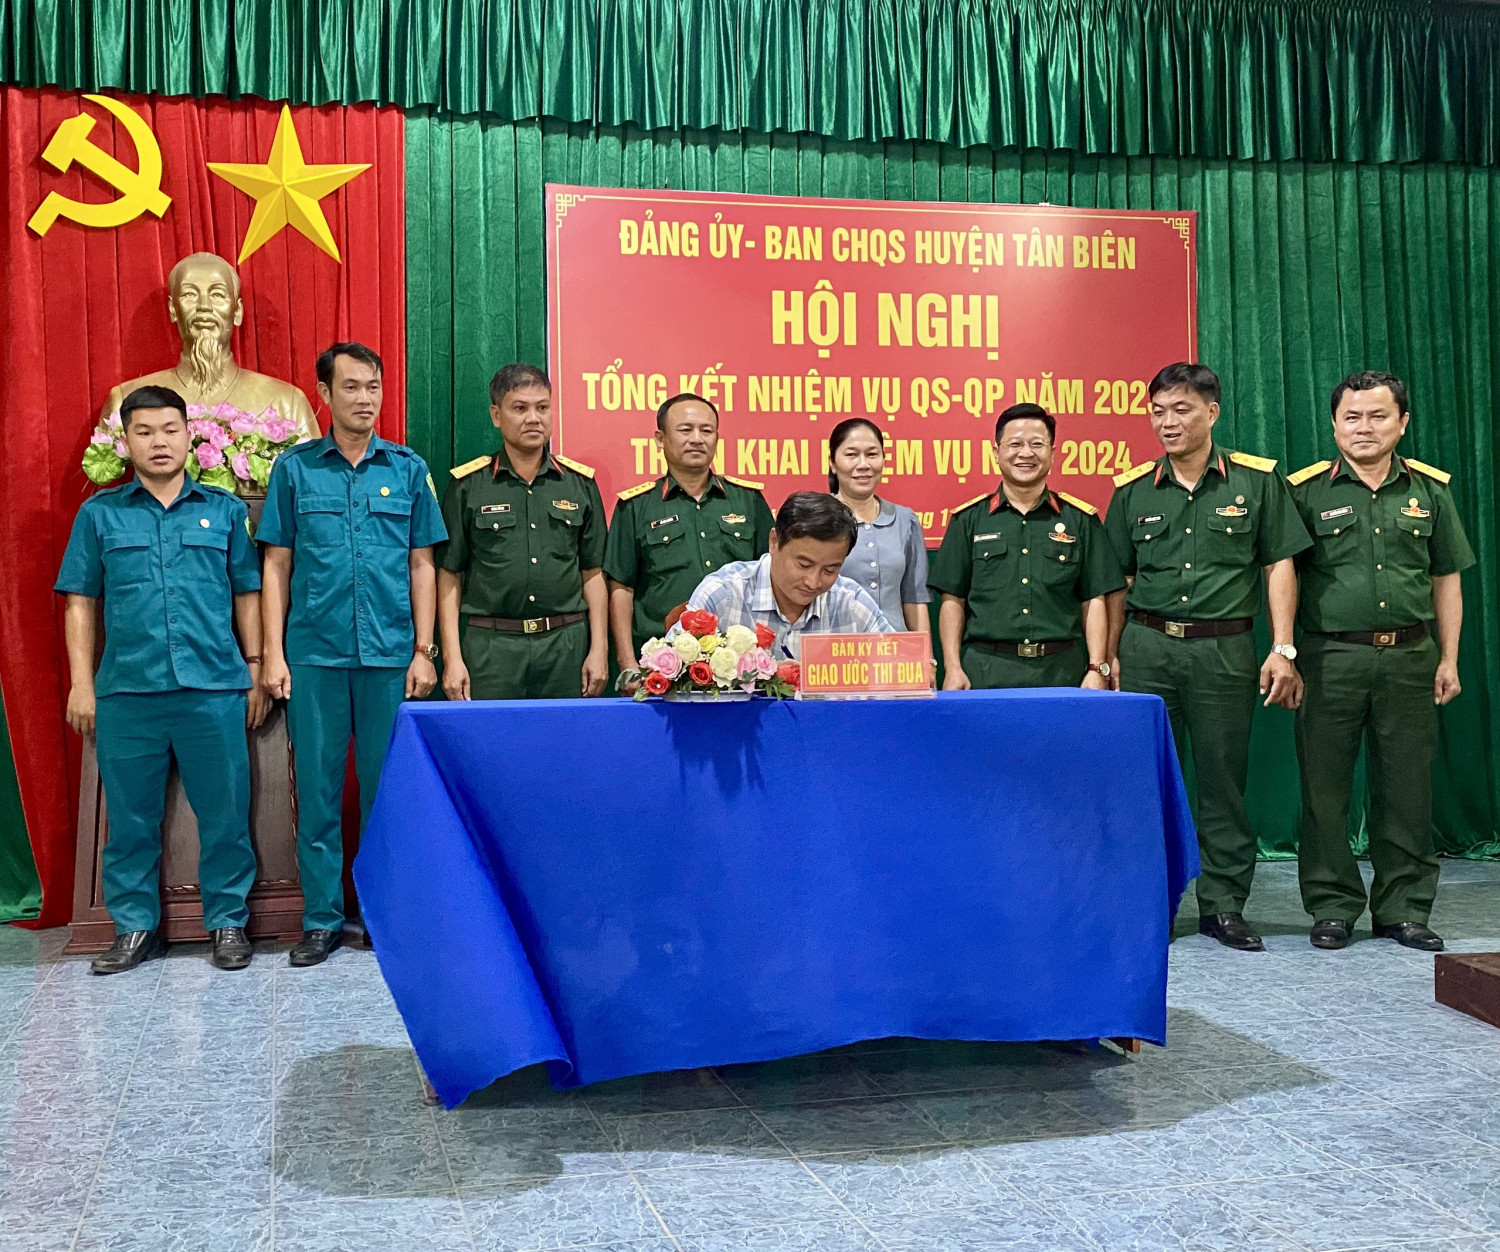 Ban CHQS huyện Tân Biên Tổng kết nhiệm vụ quân sự, quốc phòng năm 2023 và triển khai nhiệm vụ năm 2024